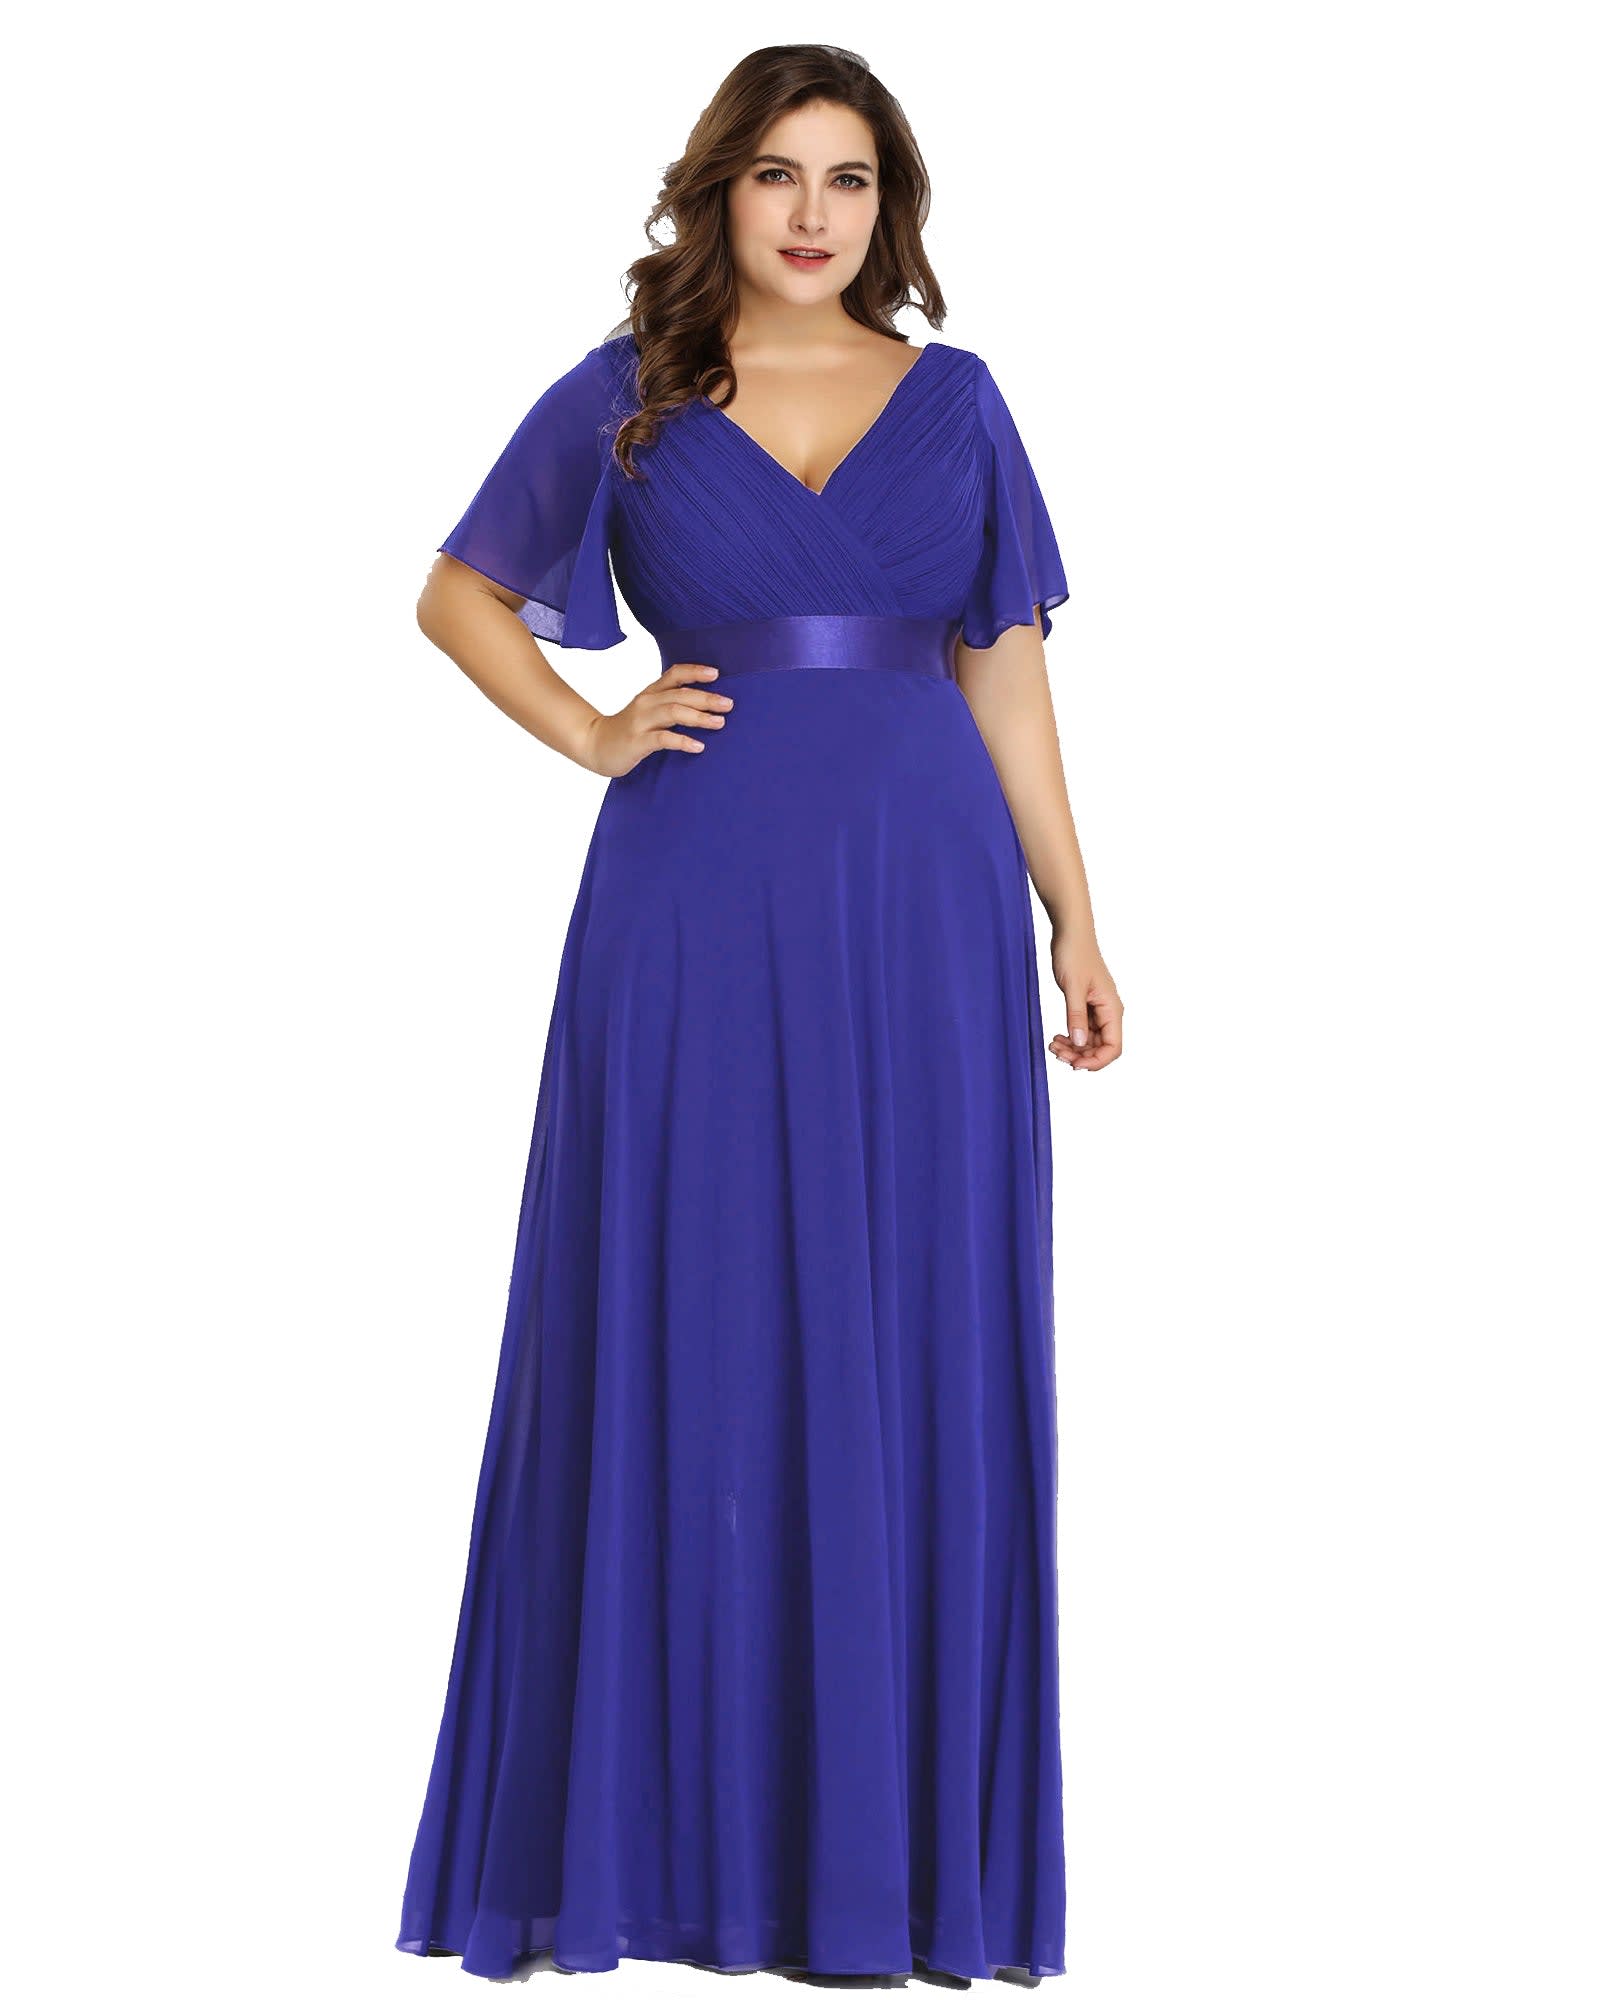 Long Chiffon Empire Waist Bridesmaid Dress with Short Flutter Sleeves | Sapphire Blue